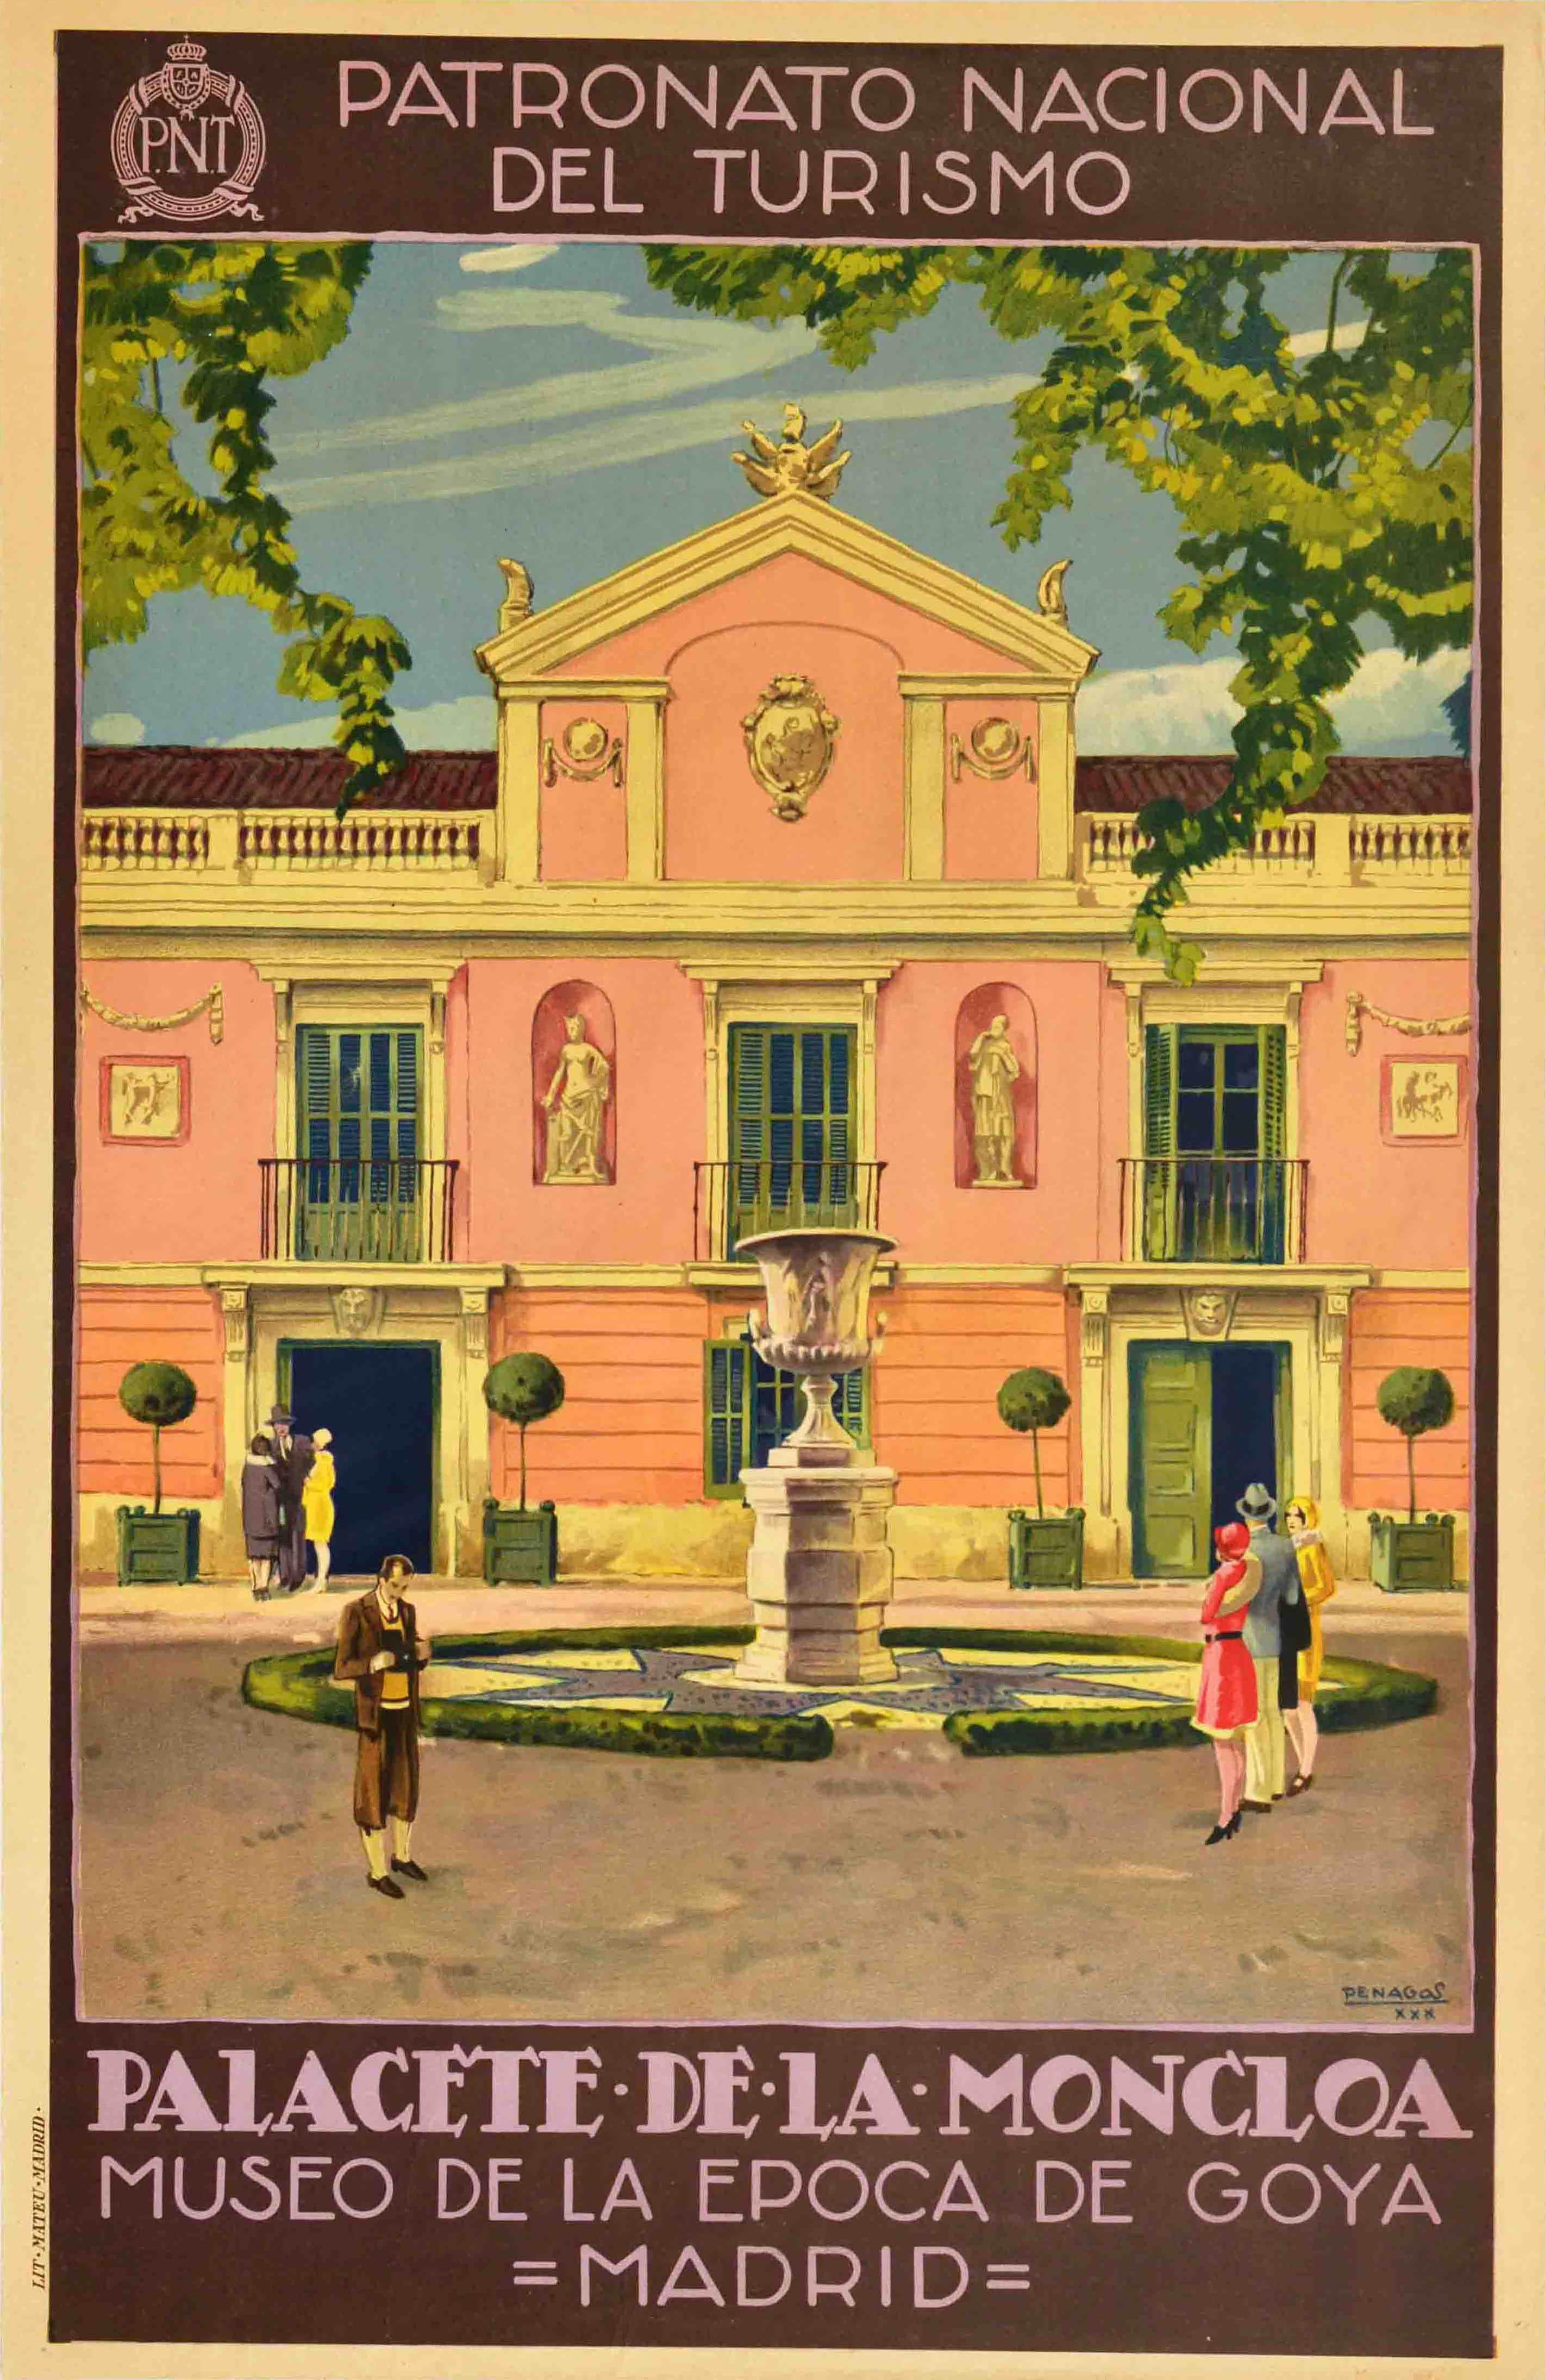 Original Vintage Travel Poster Palacete De La Moncloa Palace PNT Madrid Spain